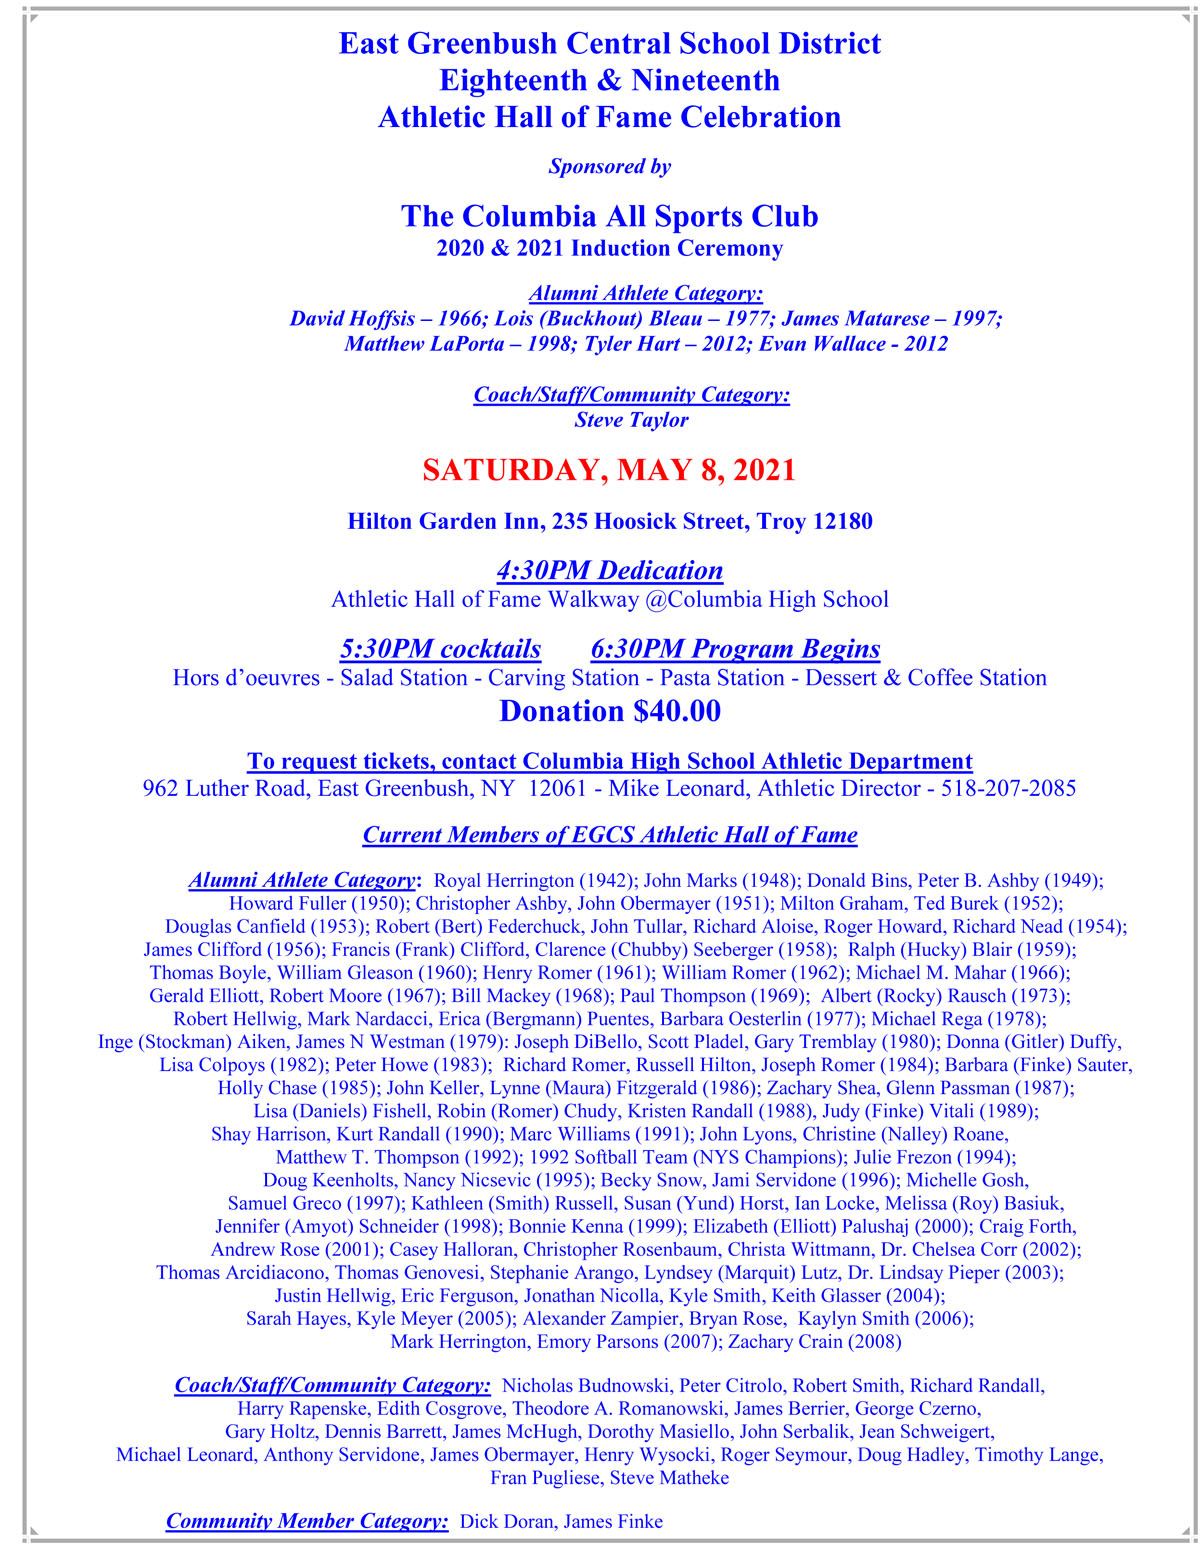 2021 Athletic Hall of Fame Celebration flyer